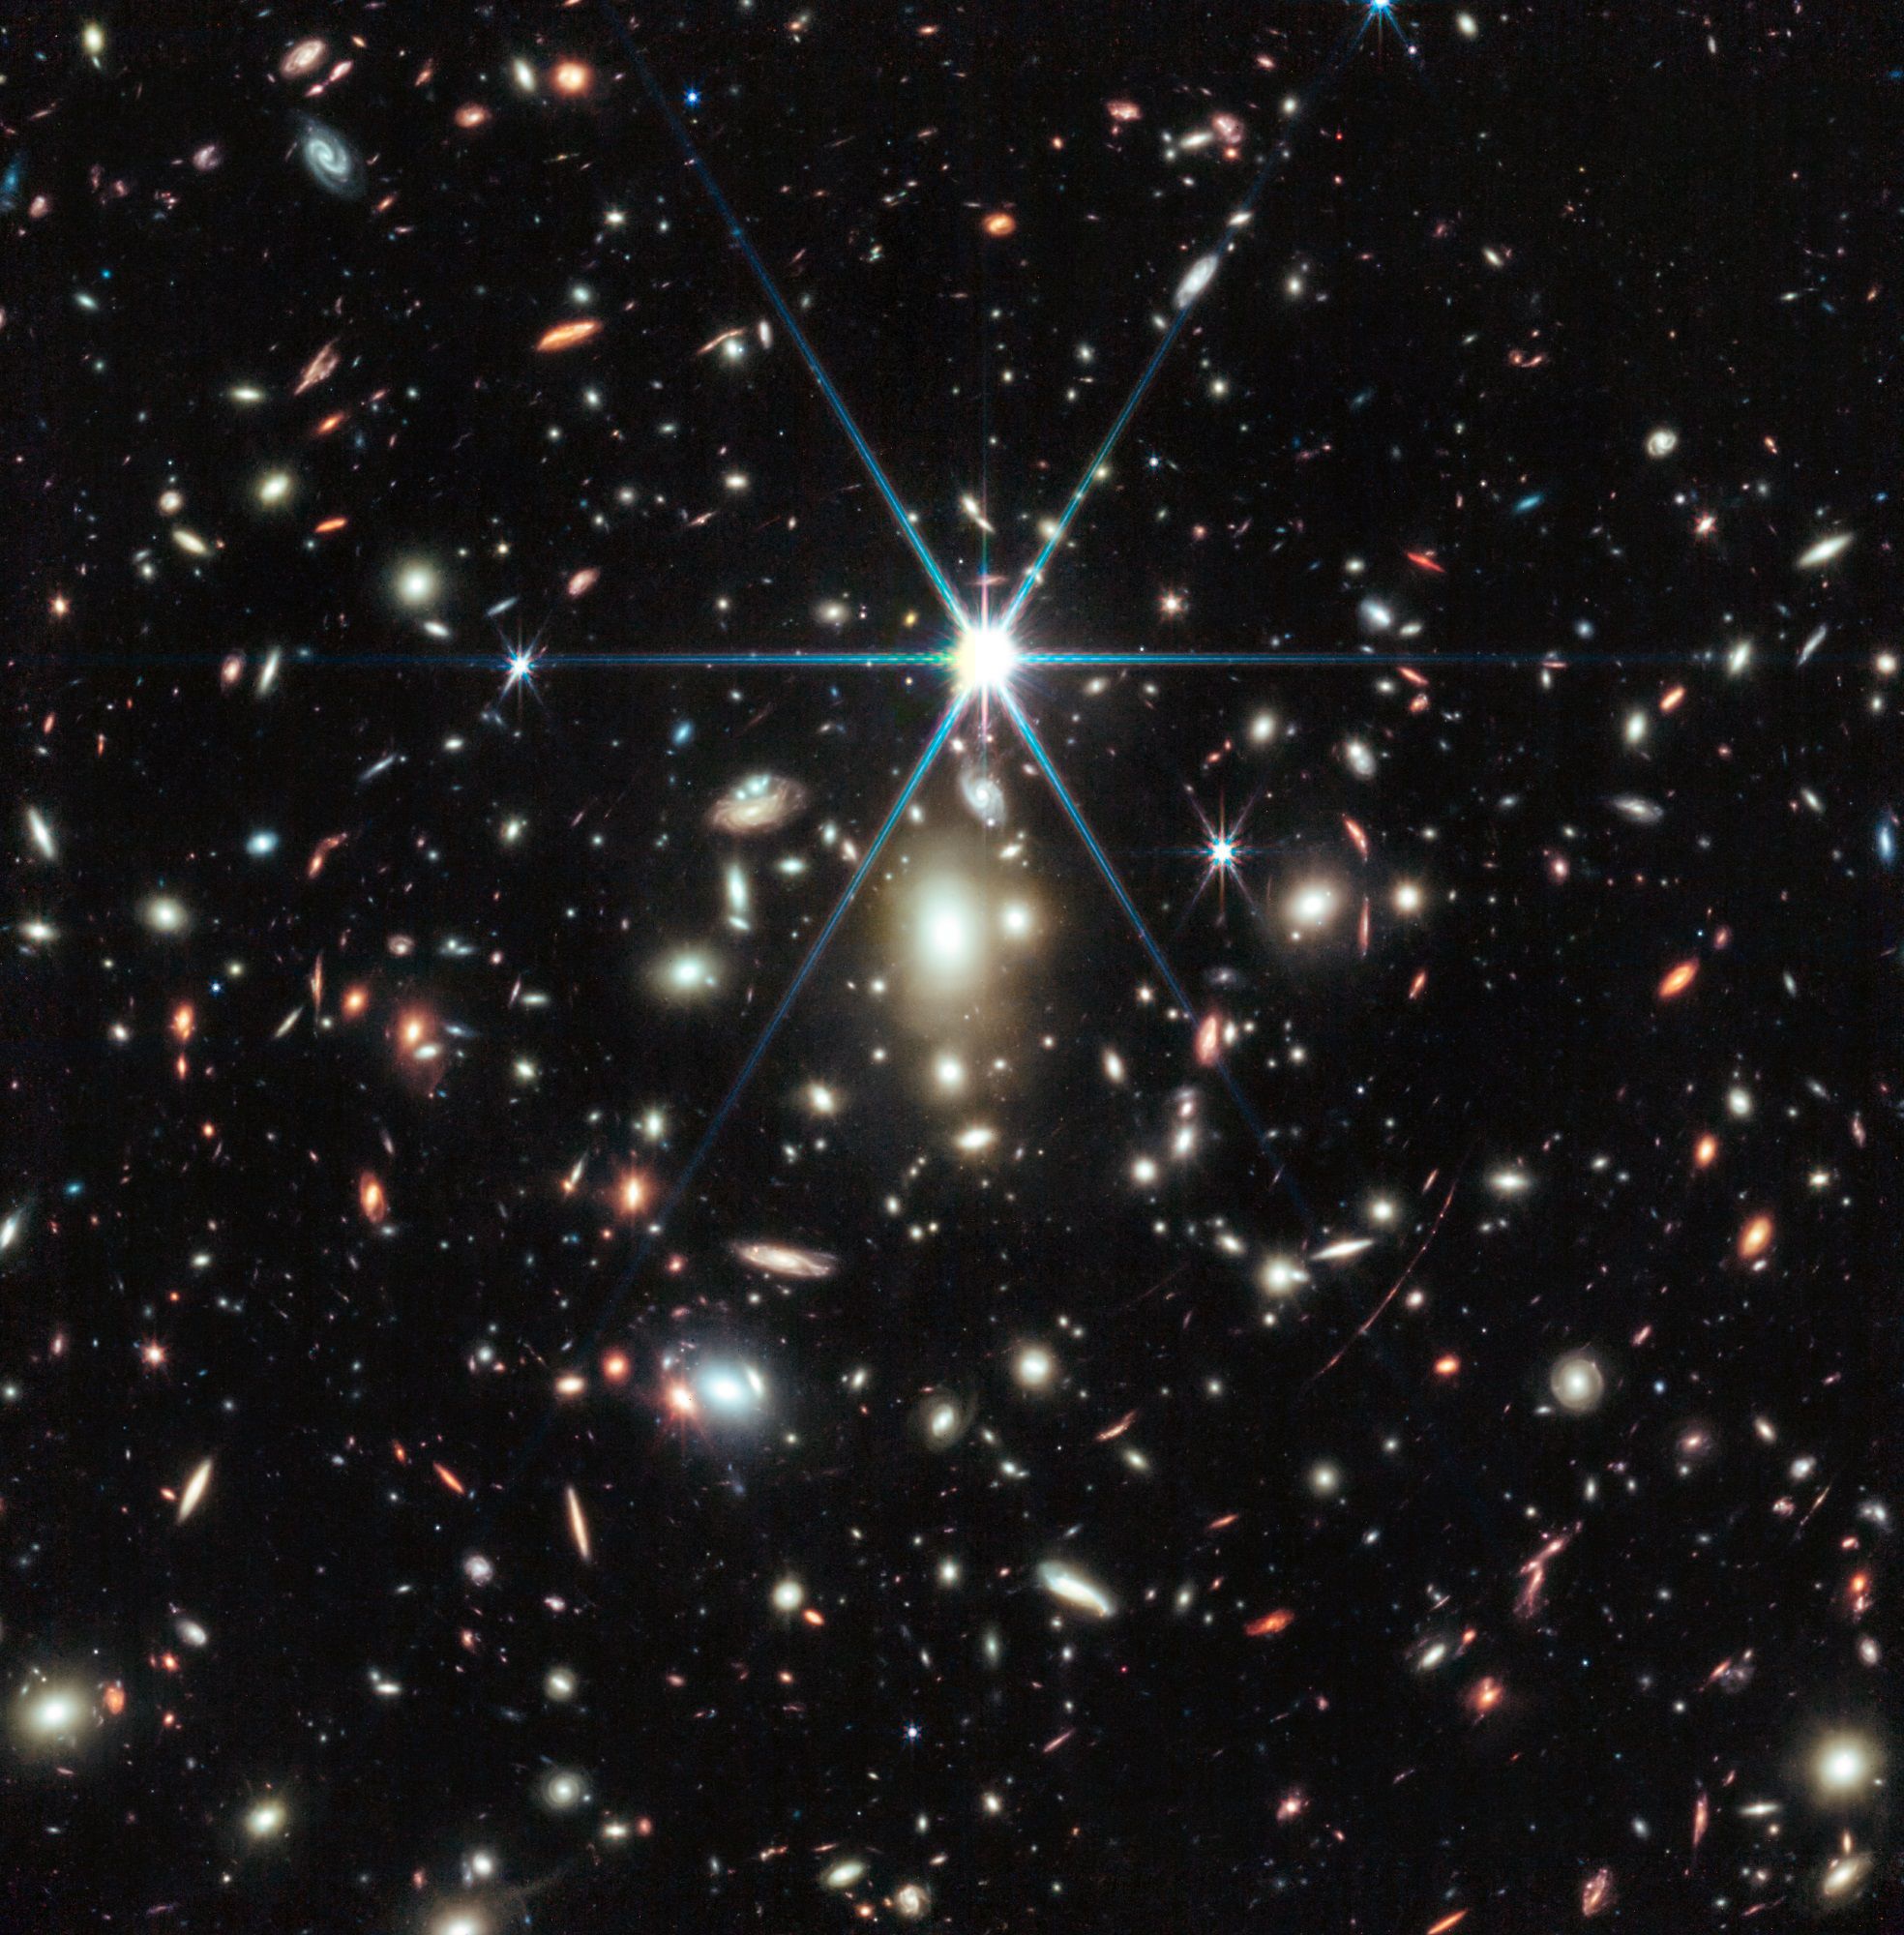 제임스 웹, 지구로부터 129억광년 떨어진 별빛 포착